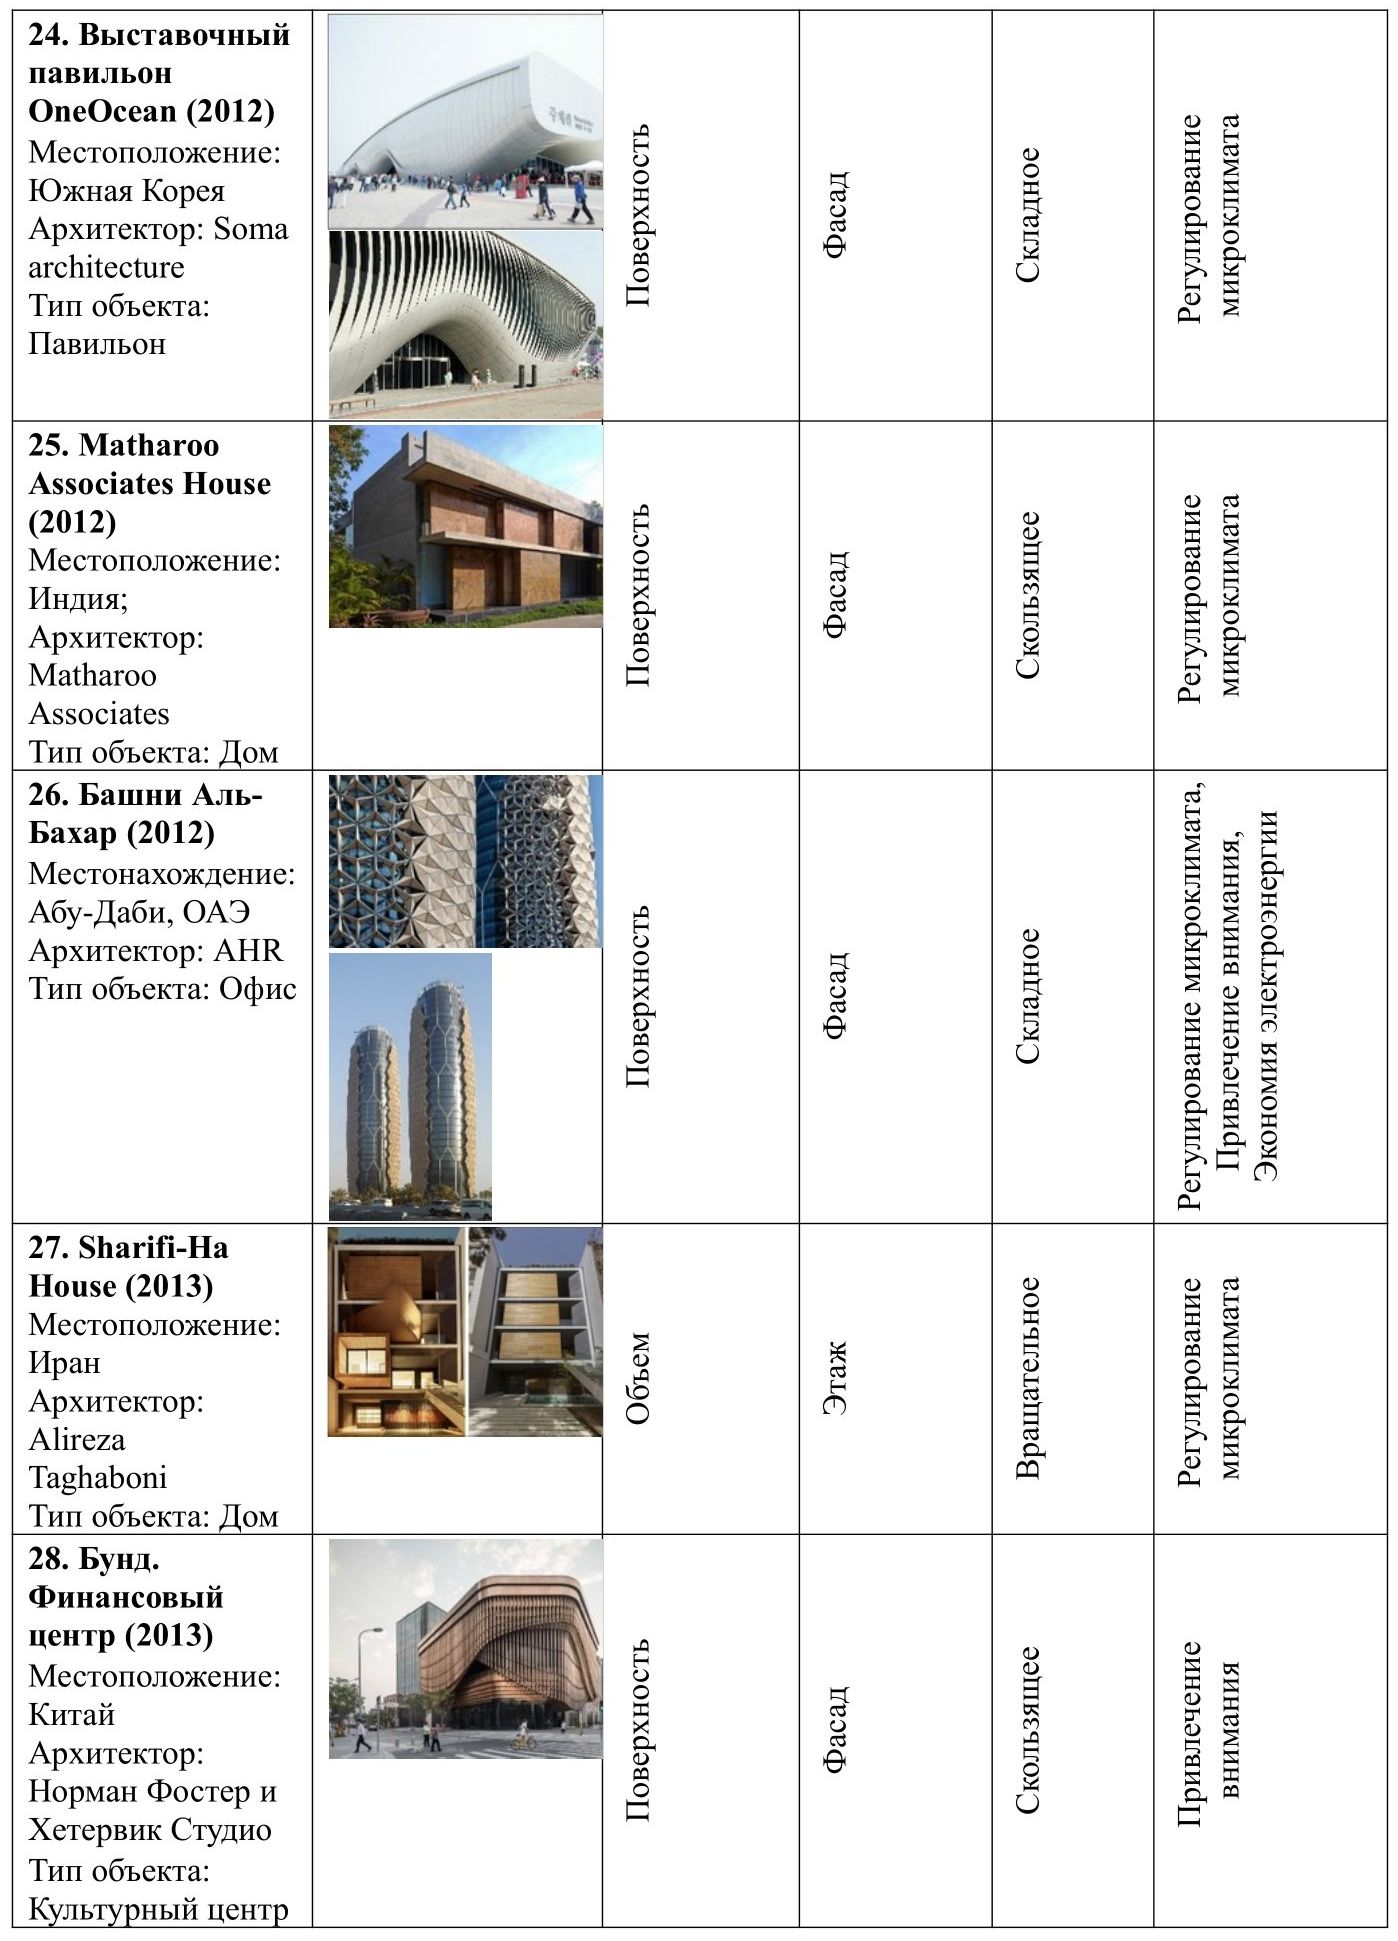 Таблица 1. Систематизация объектов кинетической архитектуры